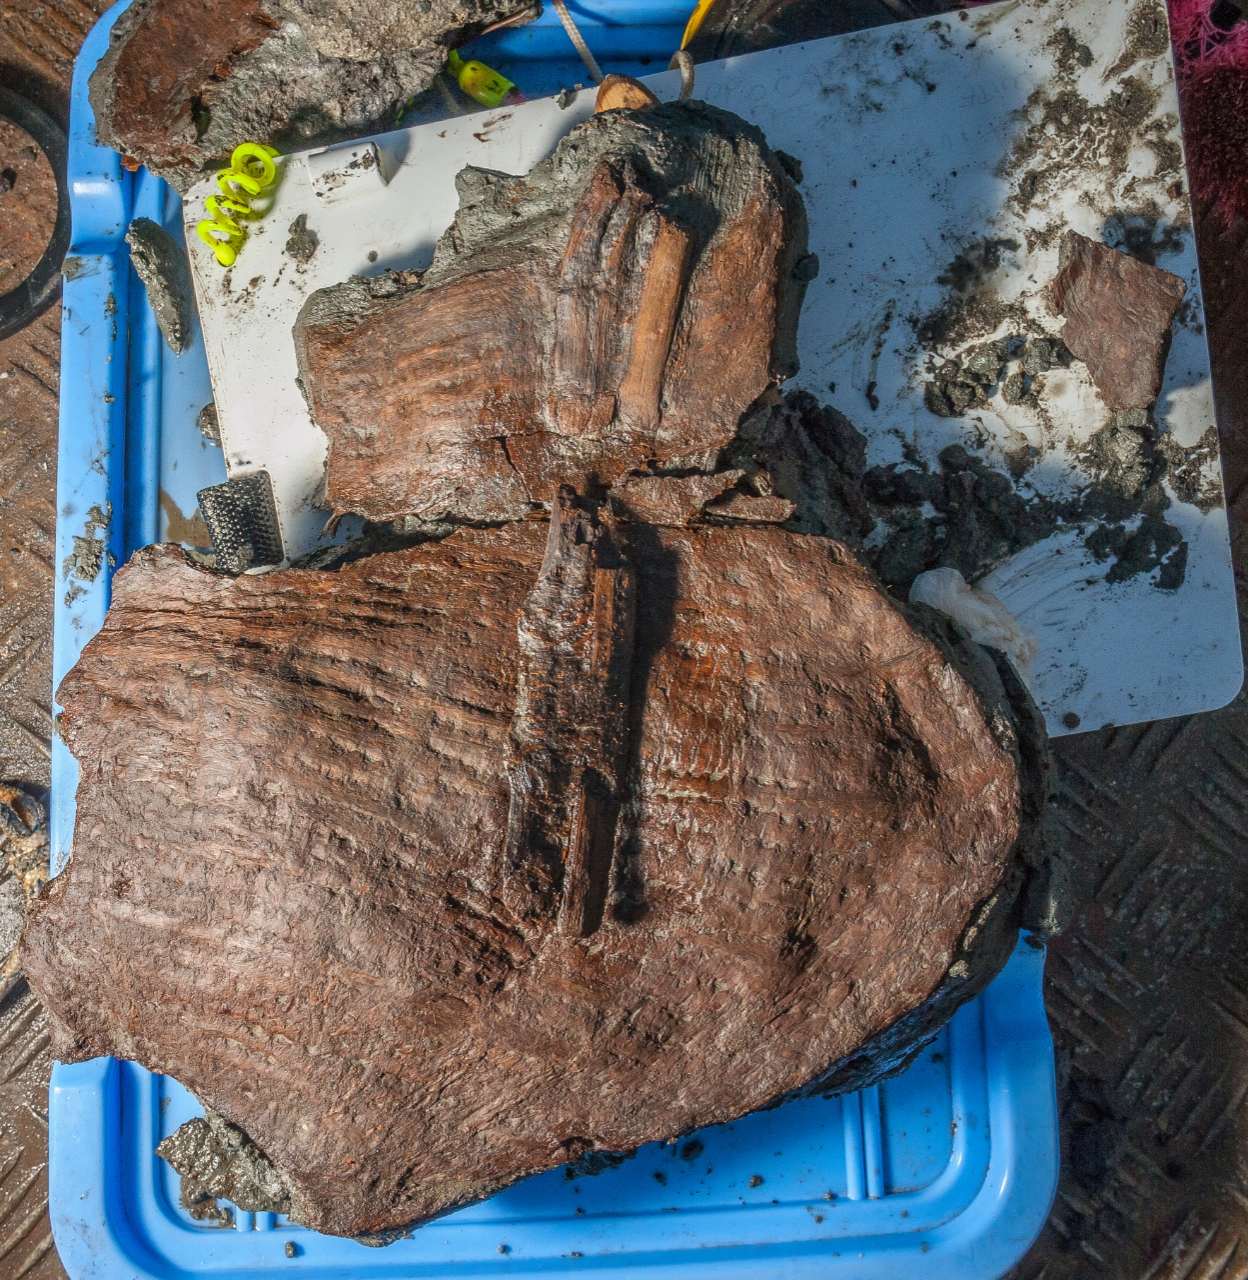 Des paniers vieux de 2,400 1 ans encore remplis de fruits trouvés dans la ville égyptienne submergée 